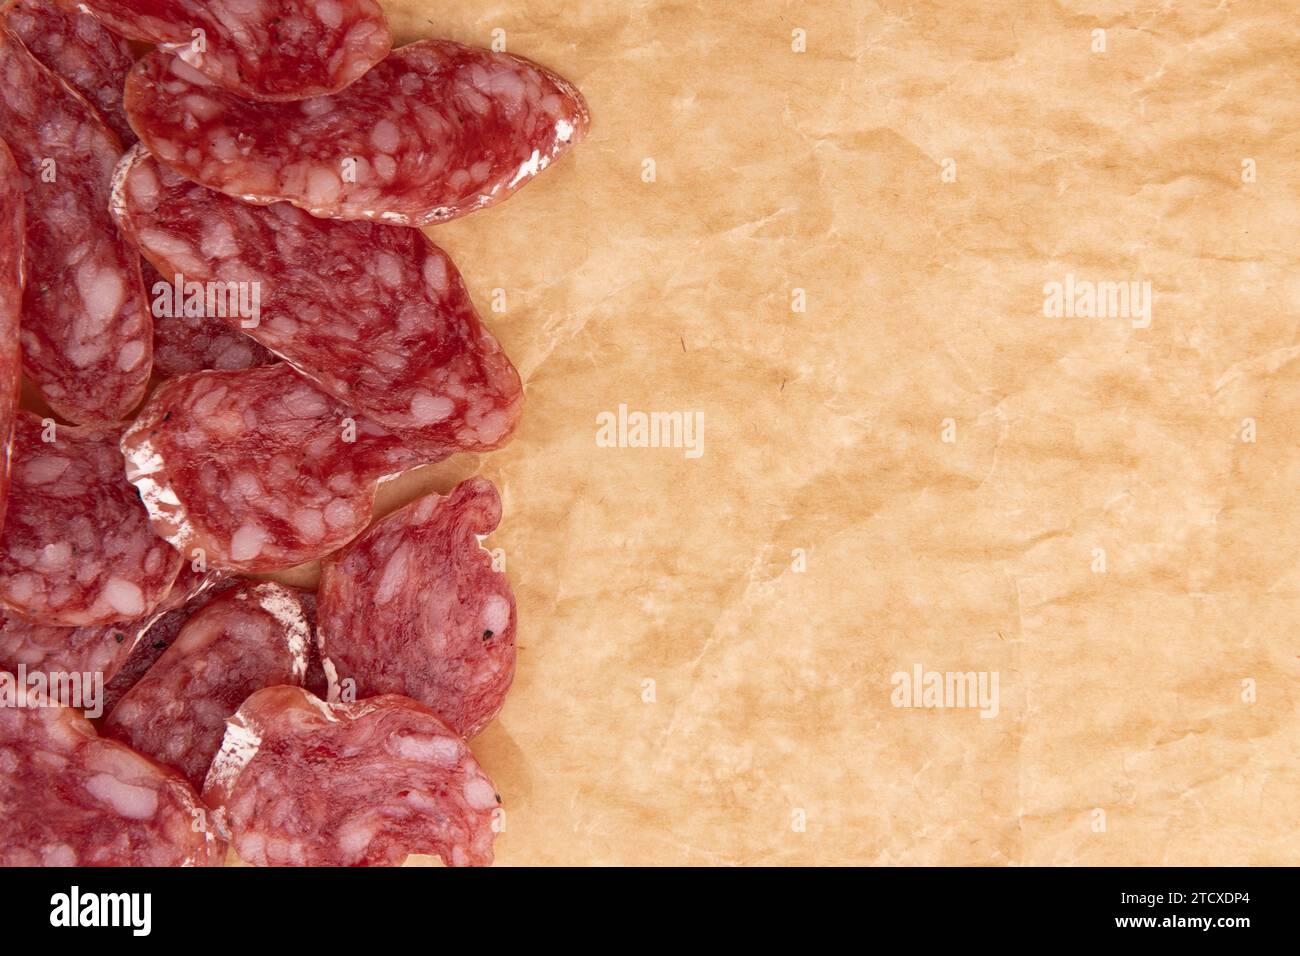 tranches de salami sur papier parchemin, concept de nourriture savoureuse avec saucisse de salami sur papier artisanal Banque D'Images